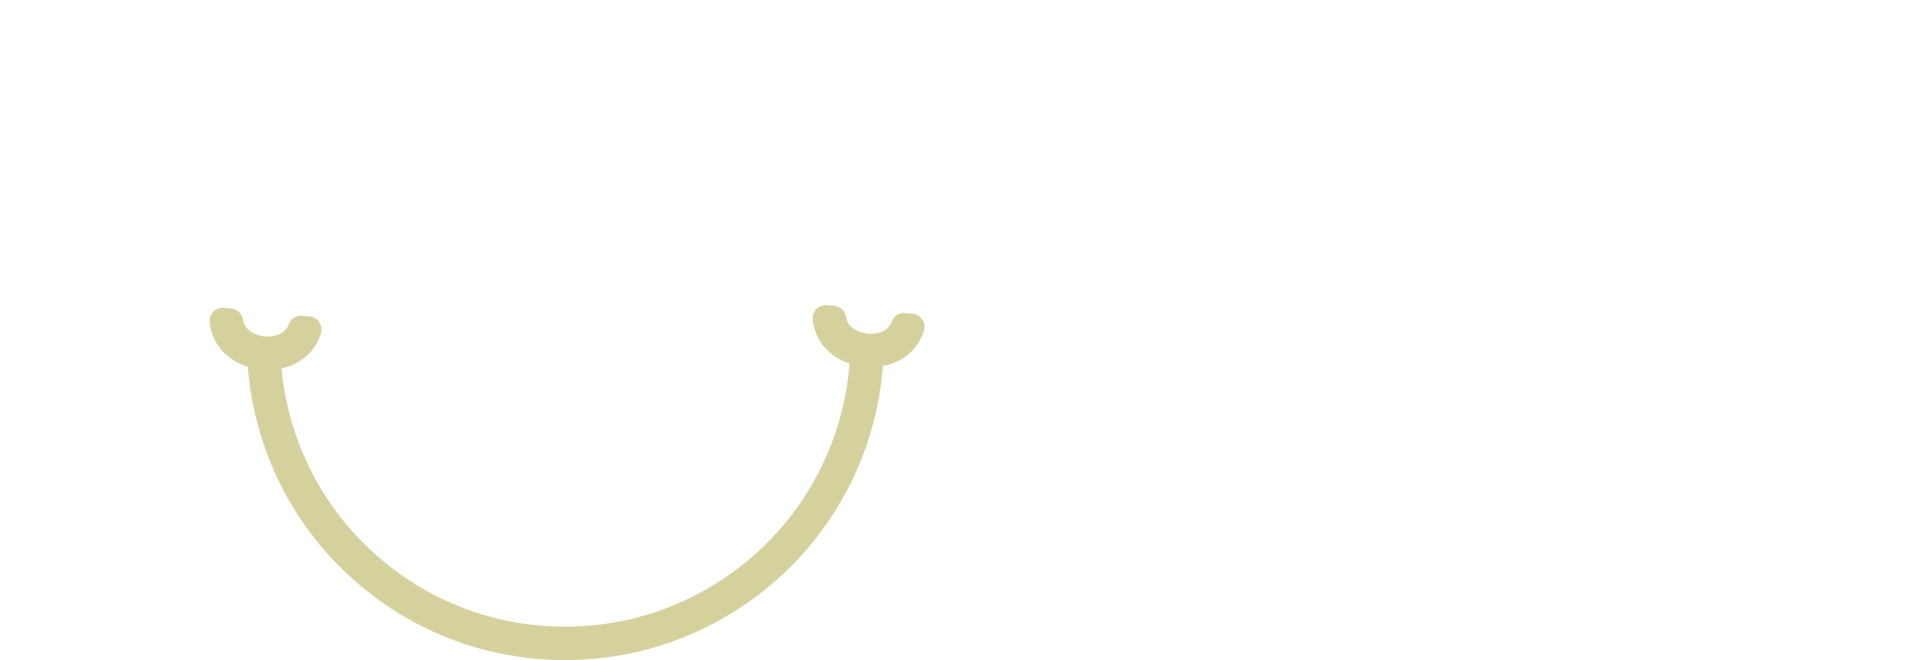 Somersmiles Dental Logo